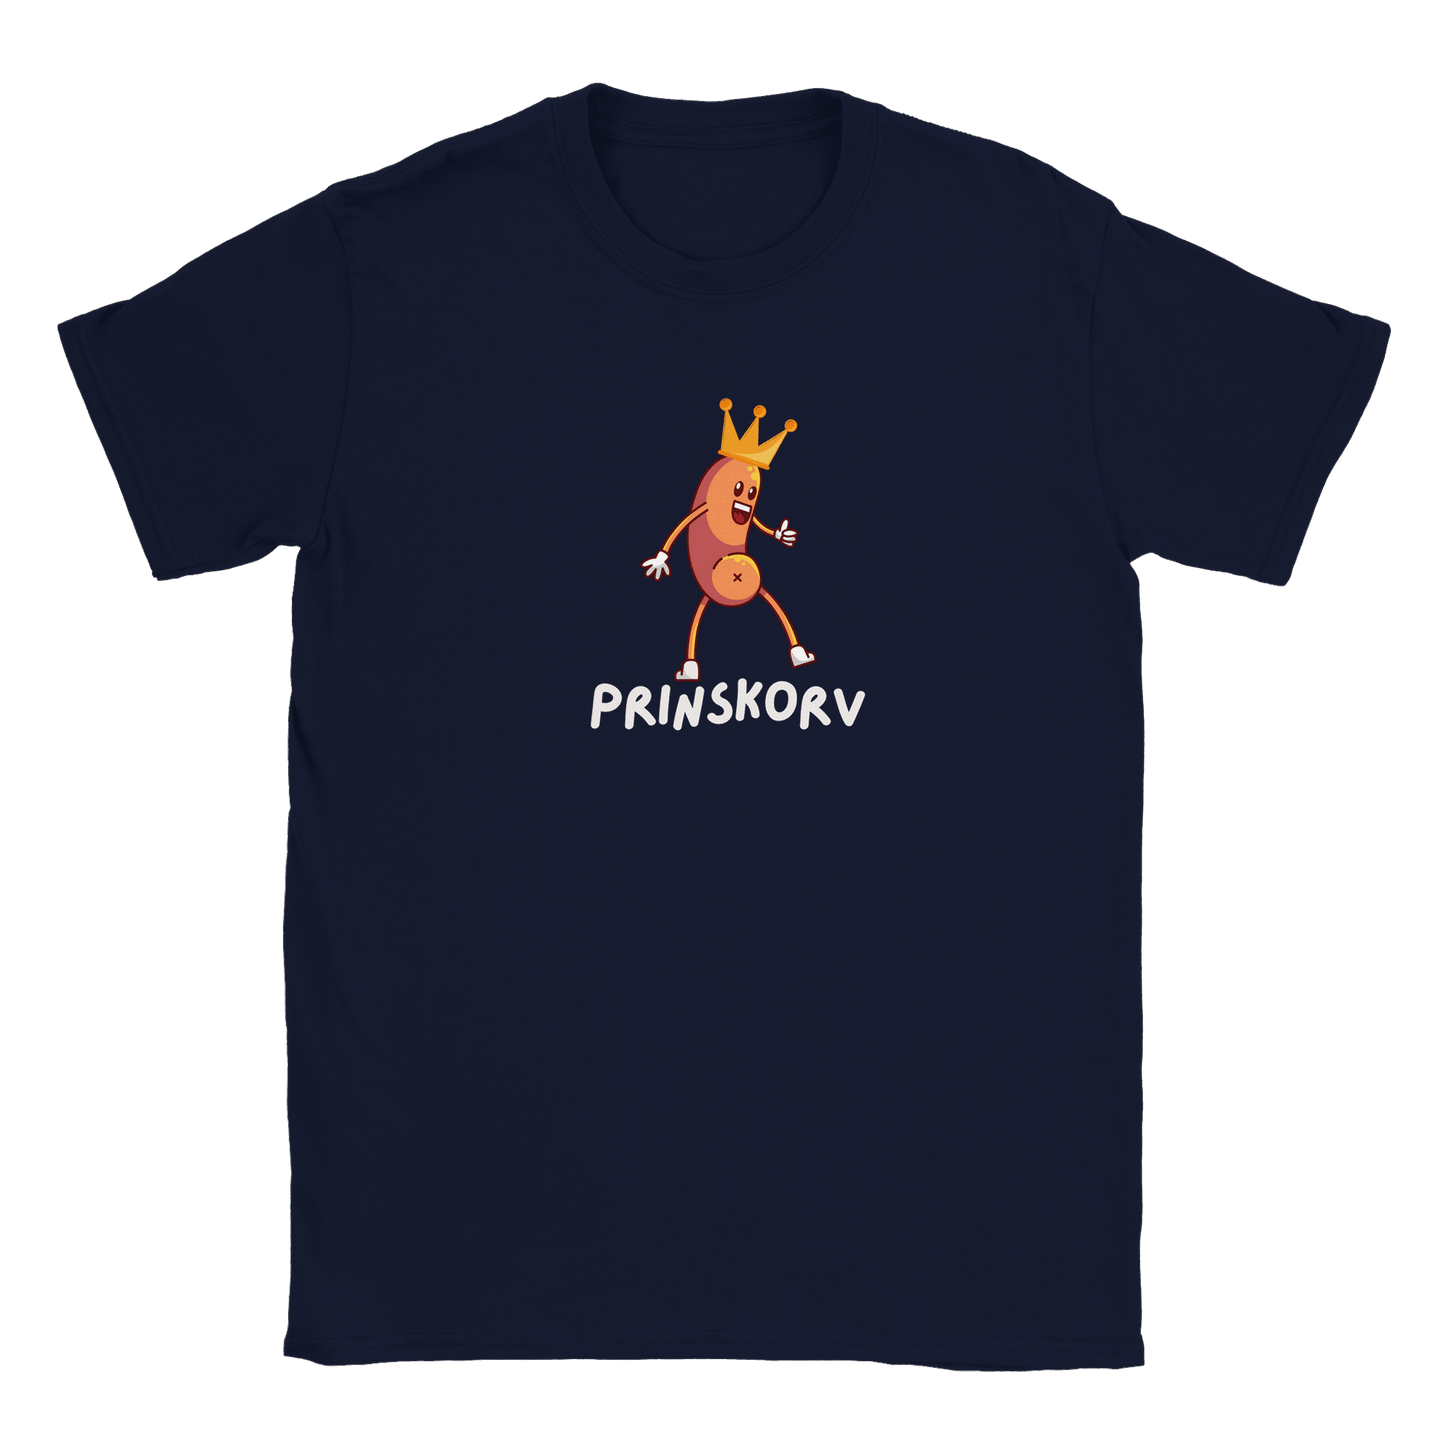 Prinskorv - T-shirt Navy